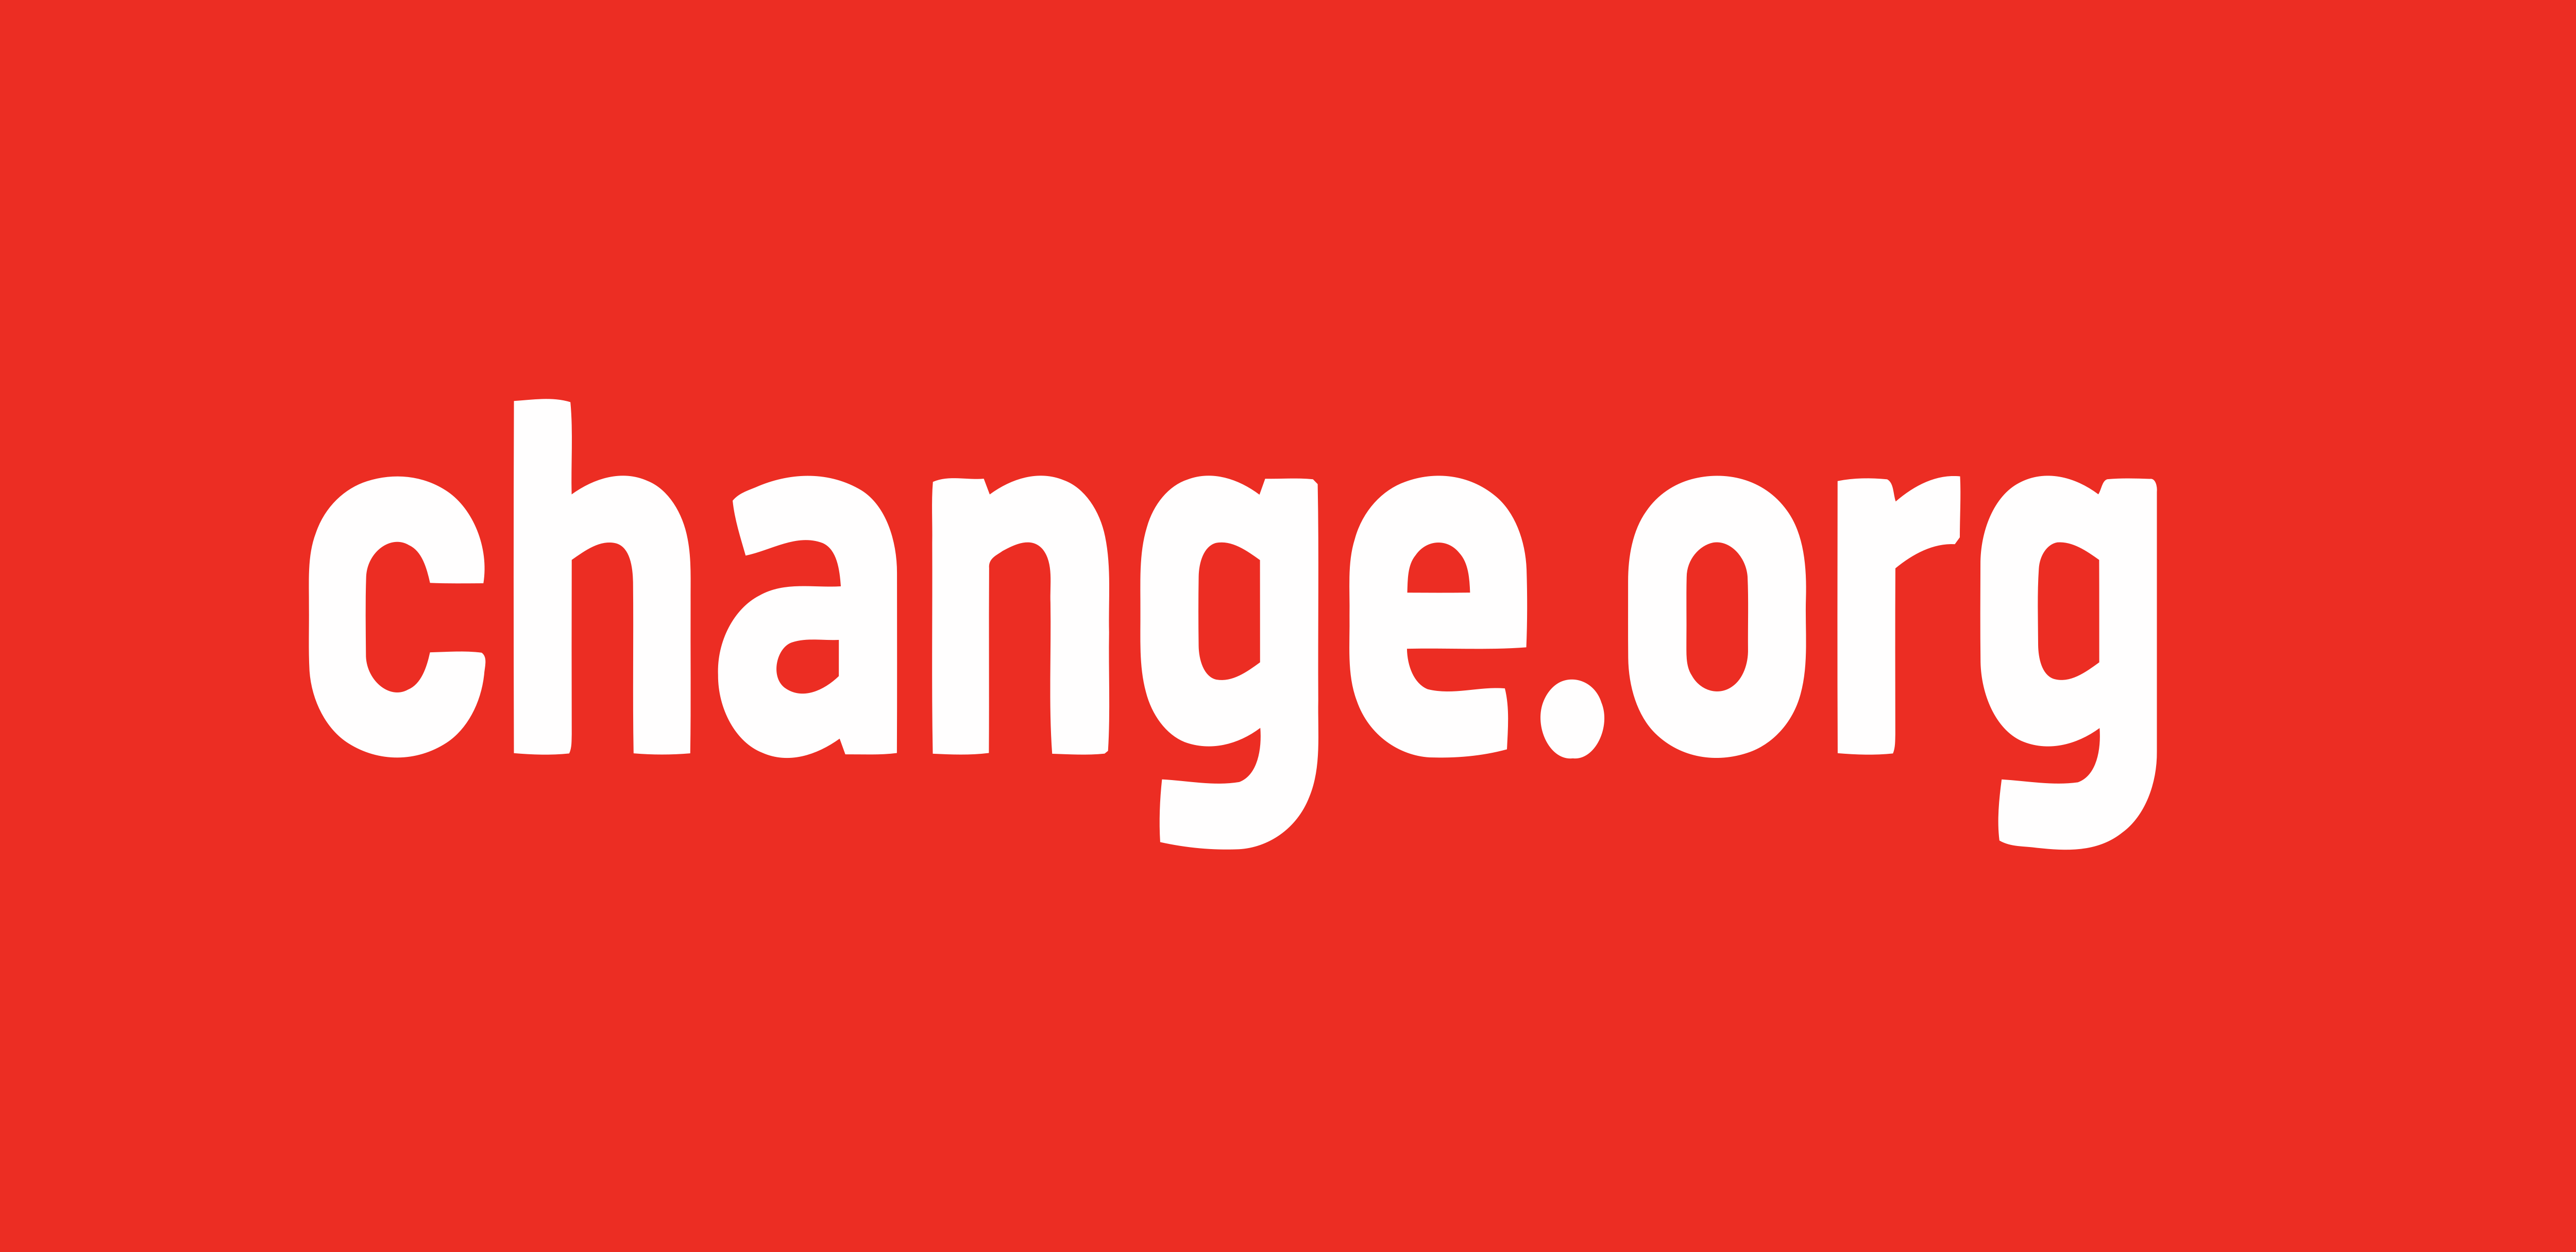 Change.org Logo - Change.org – Logos Download